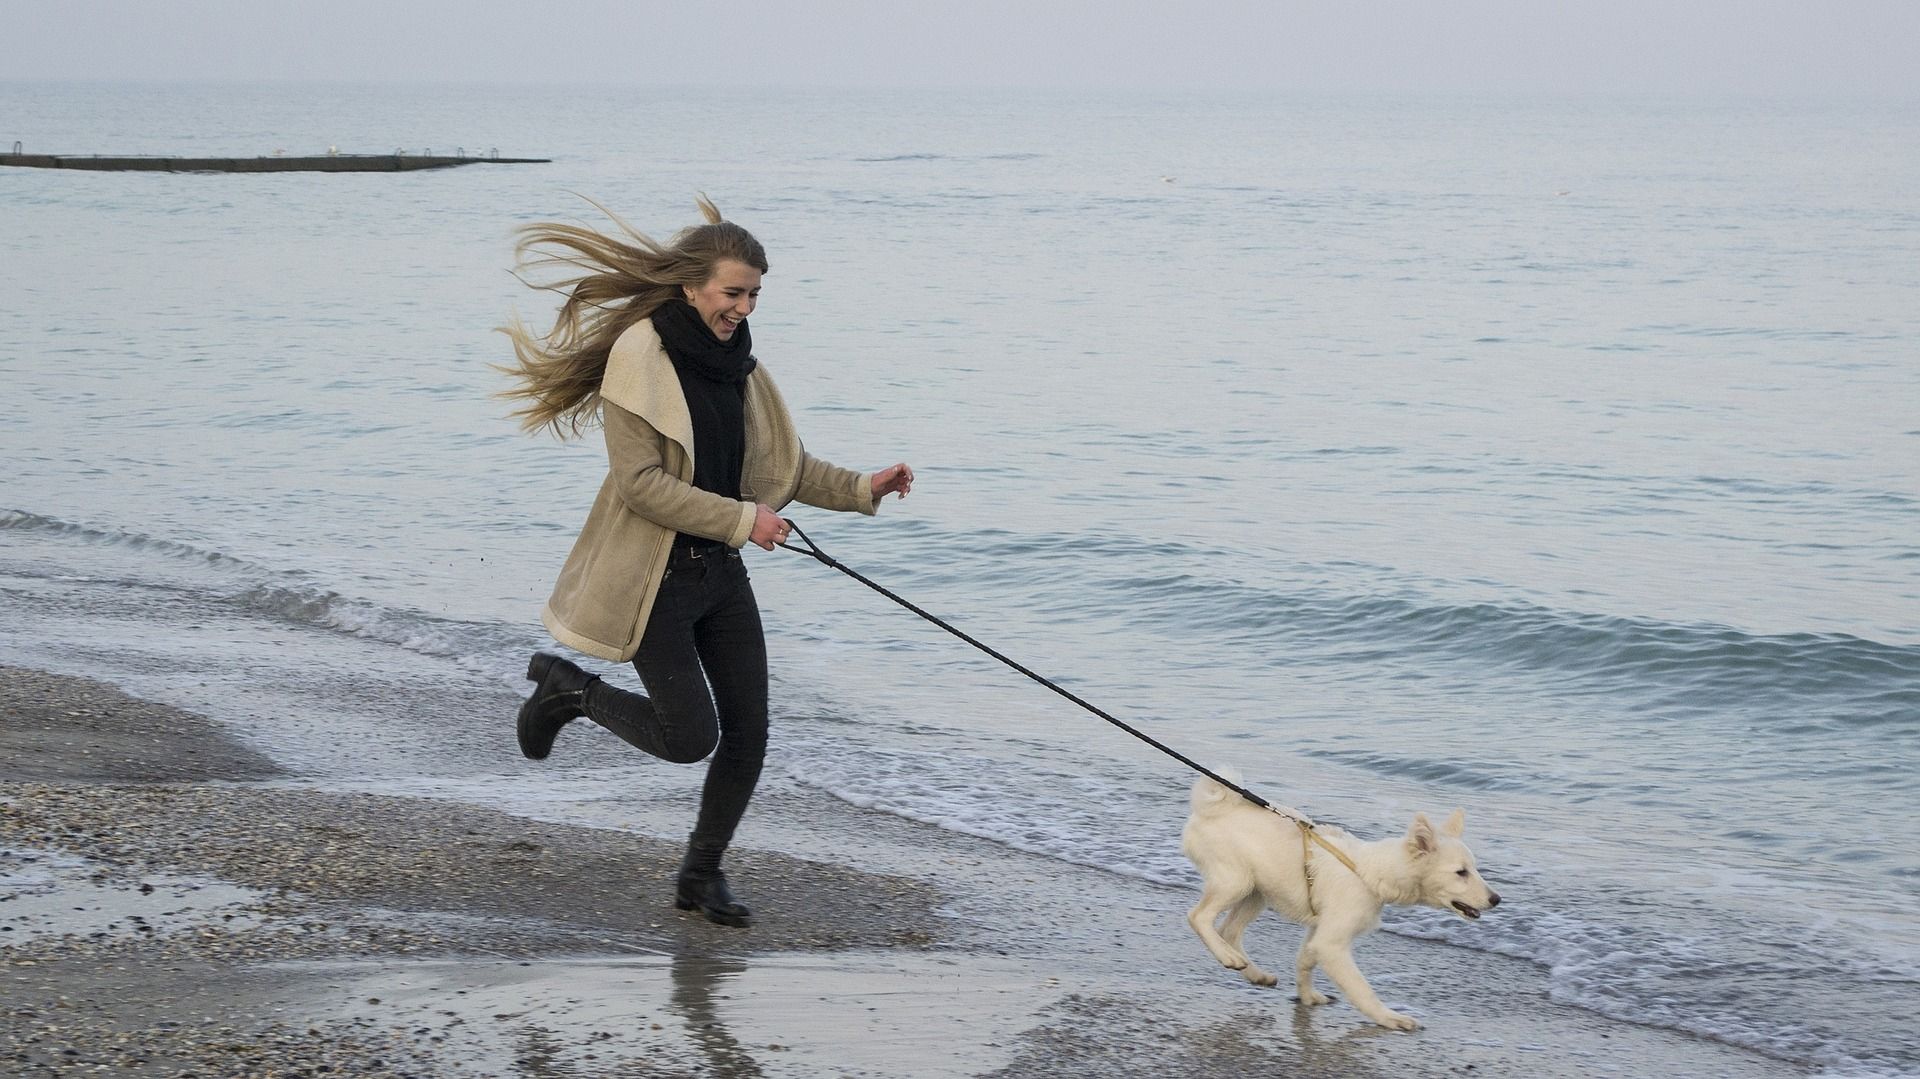 Ein Ostsee-Urlaub mit Hund ist ein unvergesslich schönes Erlebnis. Foto: Pixabay